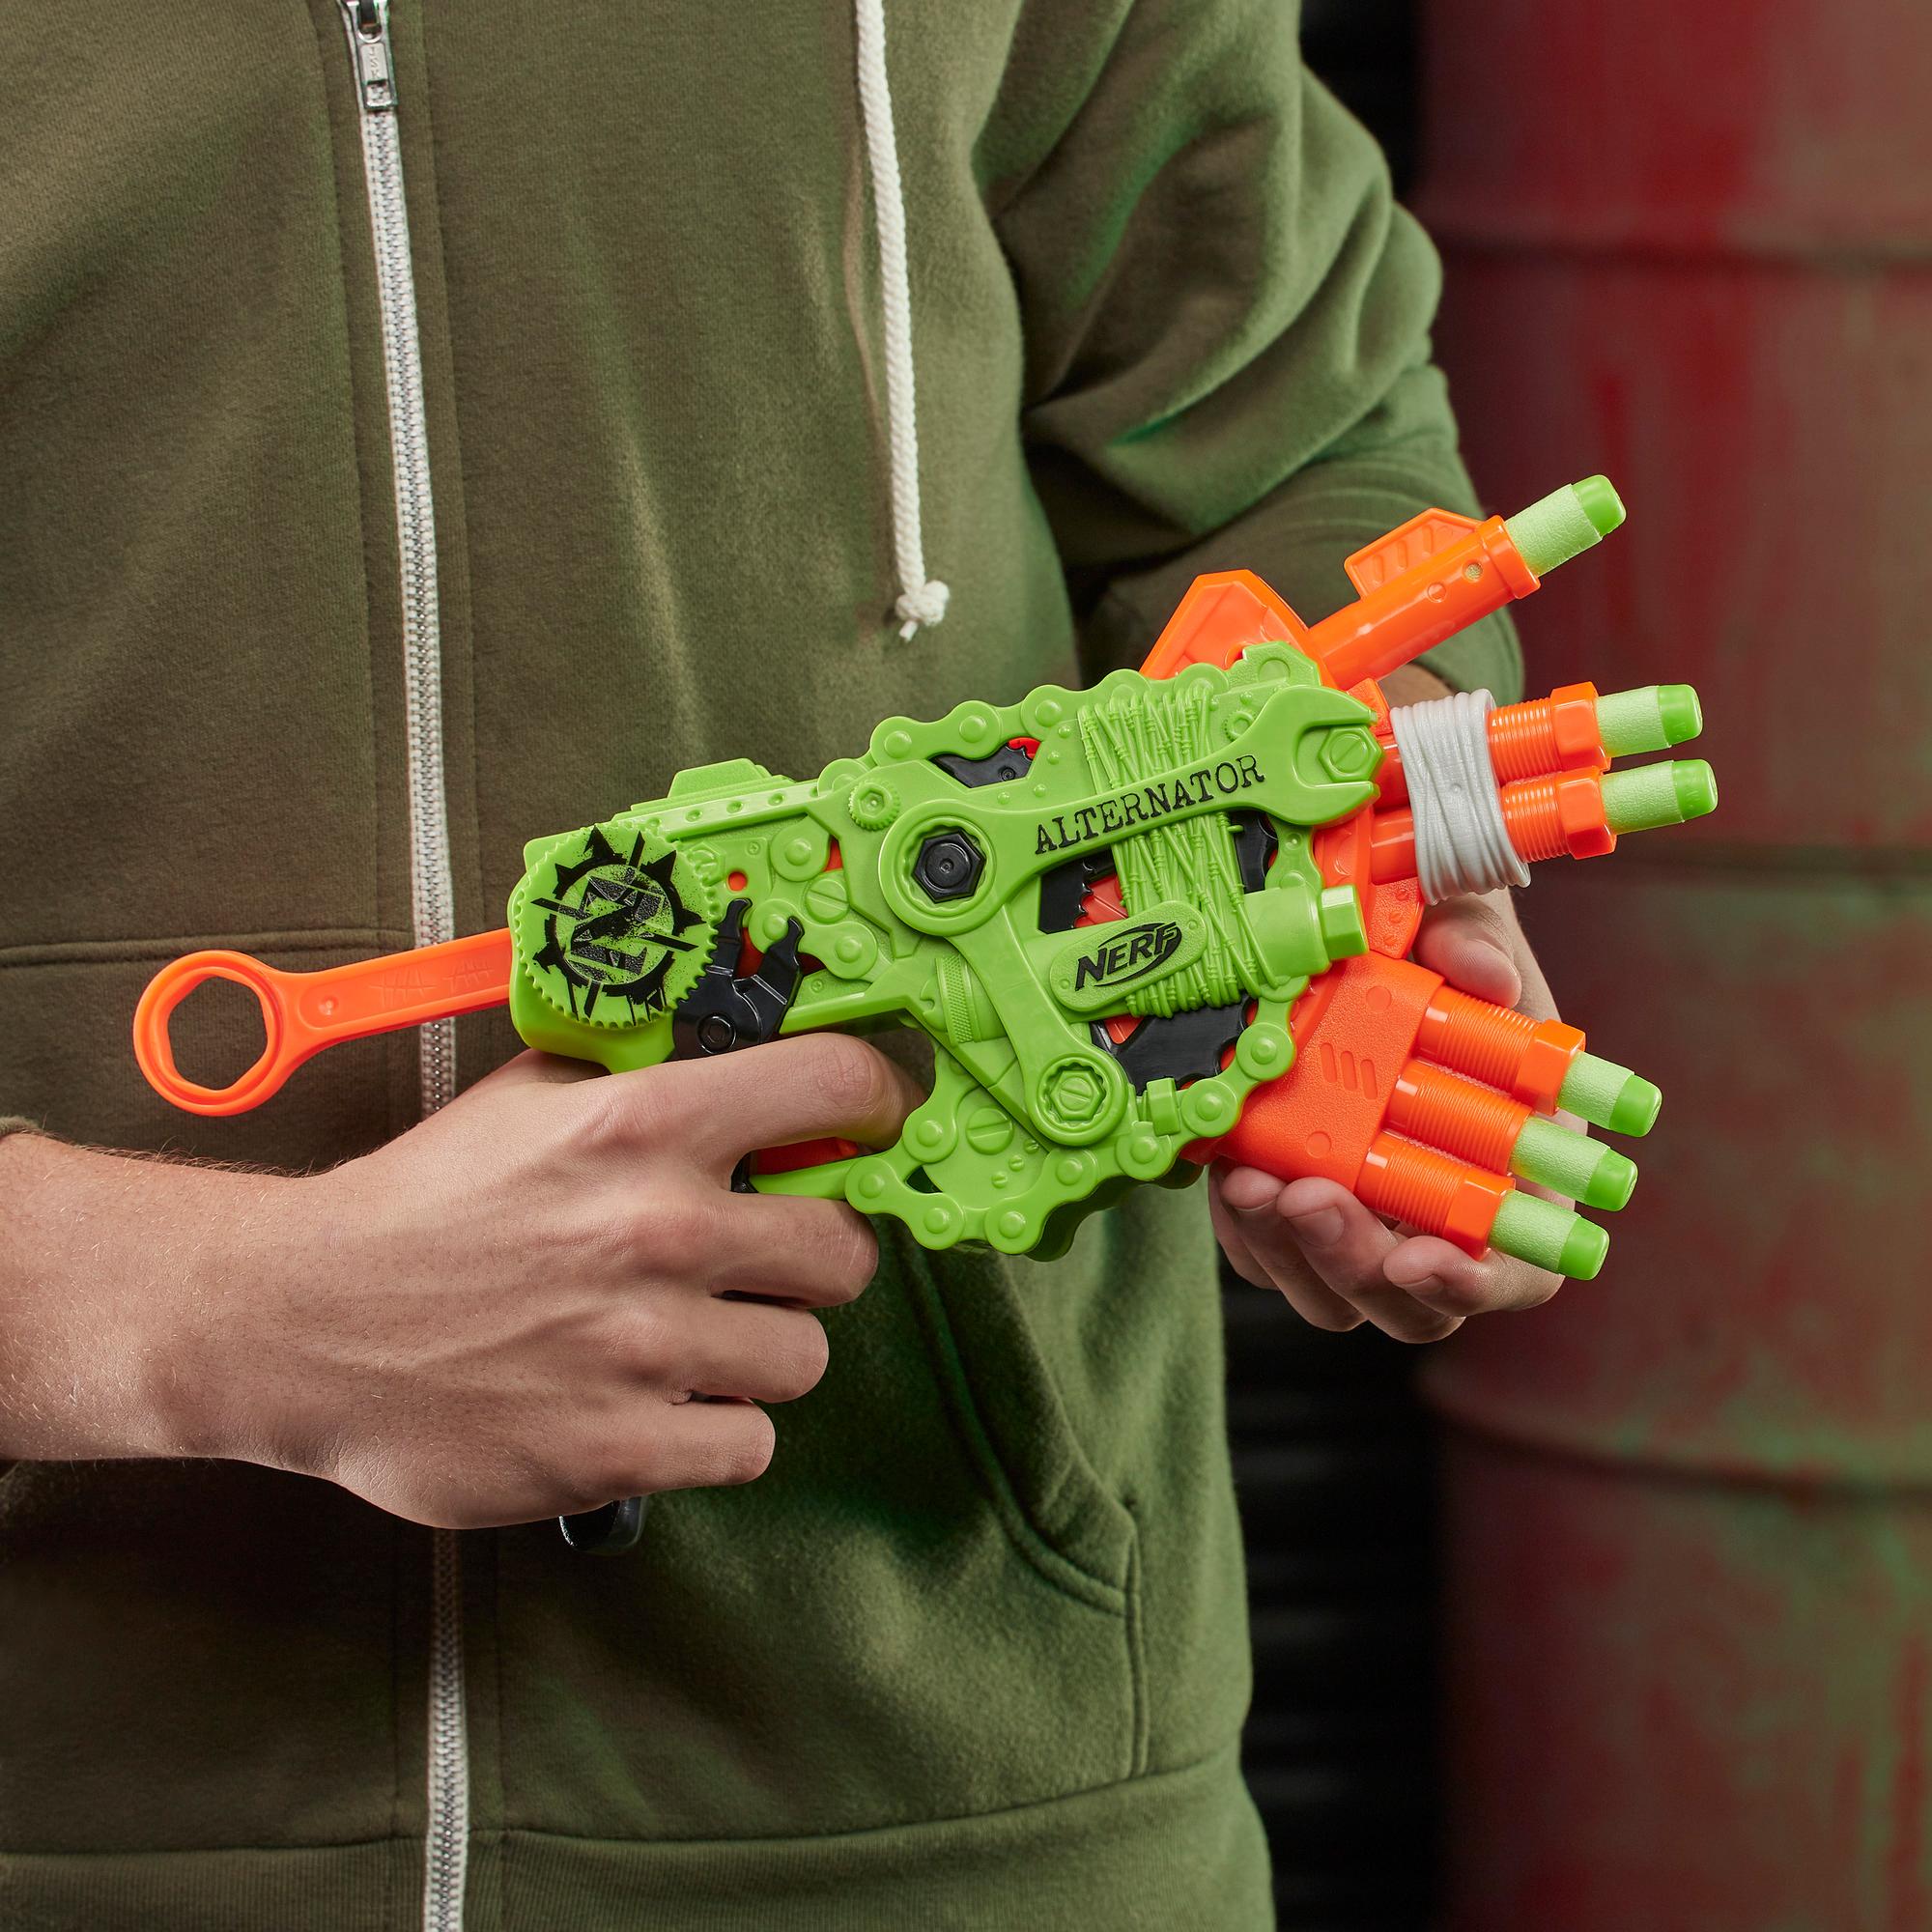 Nerf Zombie Strike Alternator Blaster – enthält 12 Nerf Zombie Strike Elite Darts – für Kinder, Teenager, Erwachsene